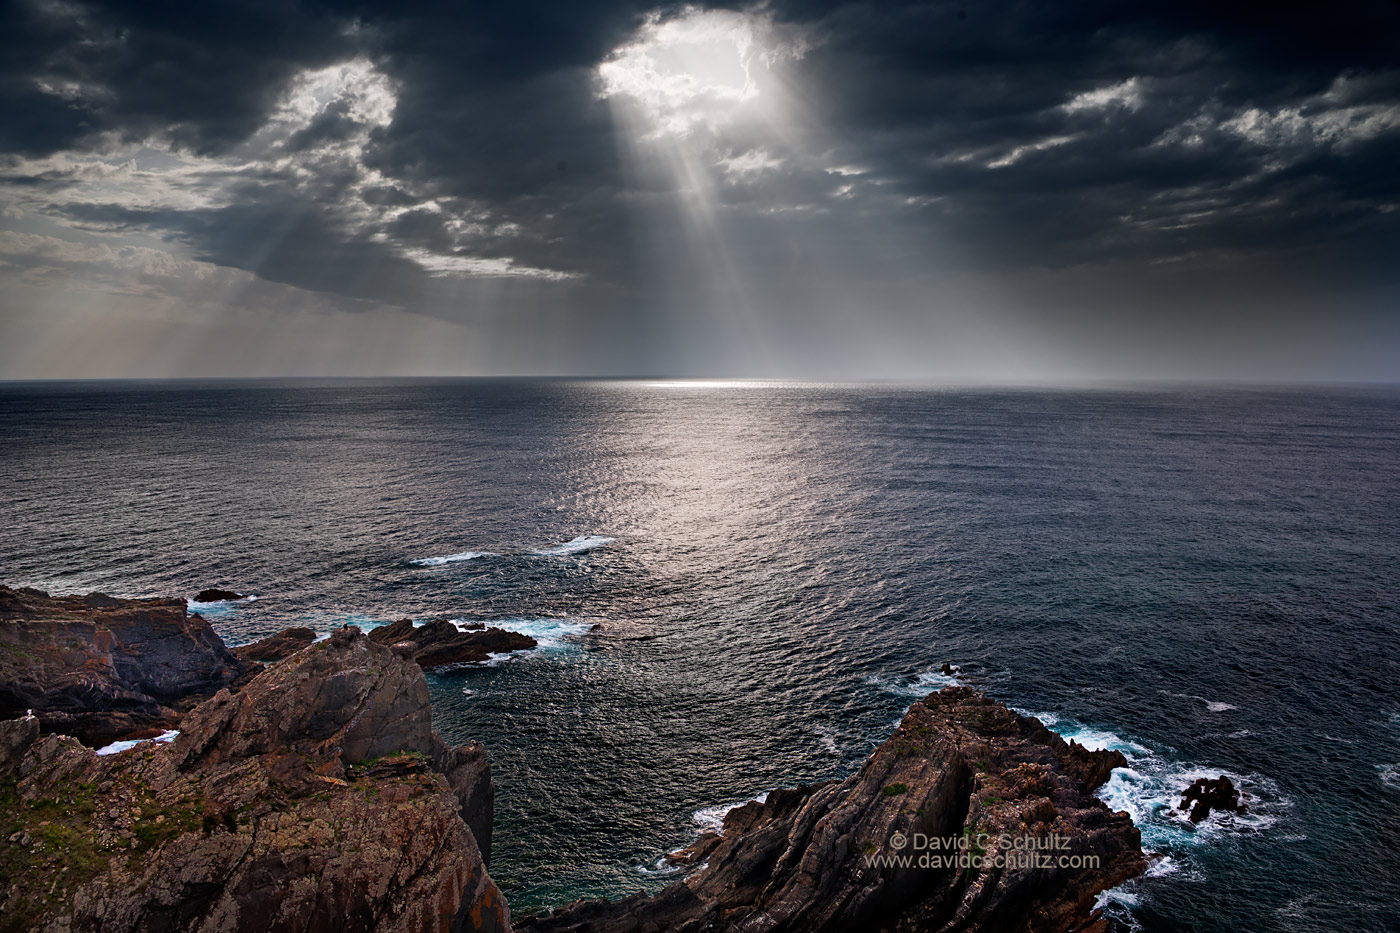 Coast of Portugal - Image #136-1658